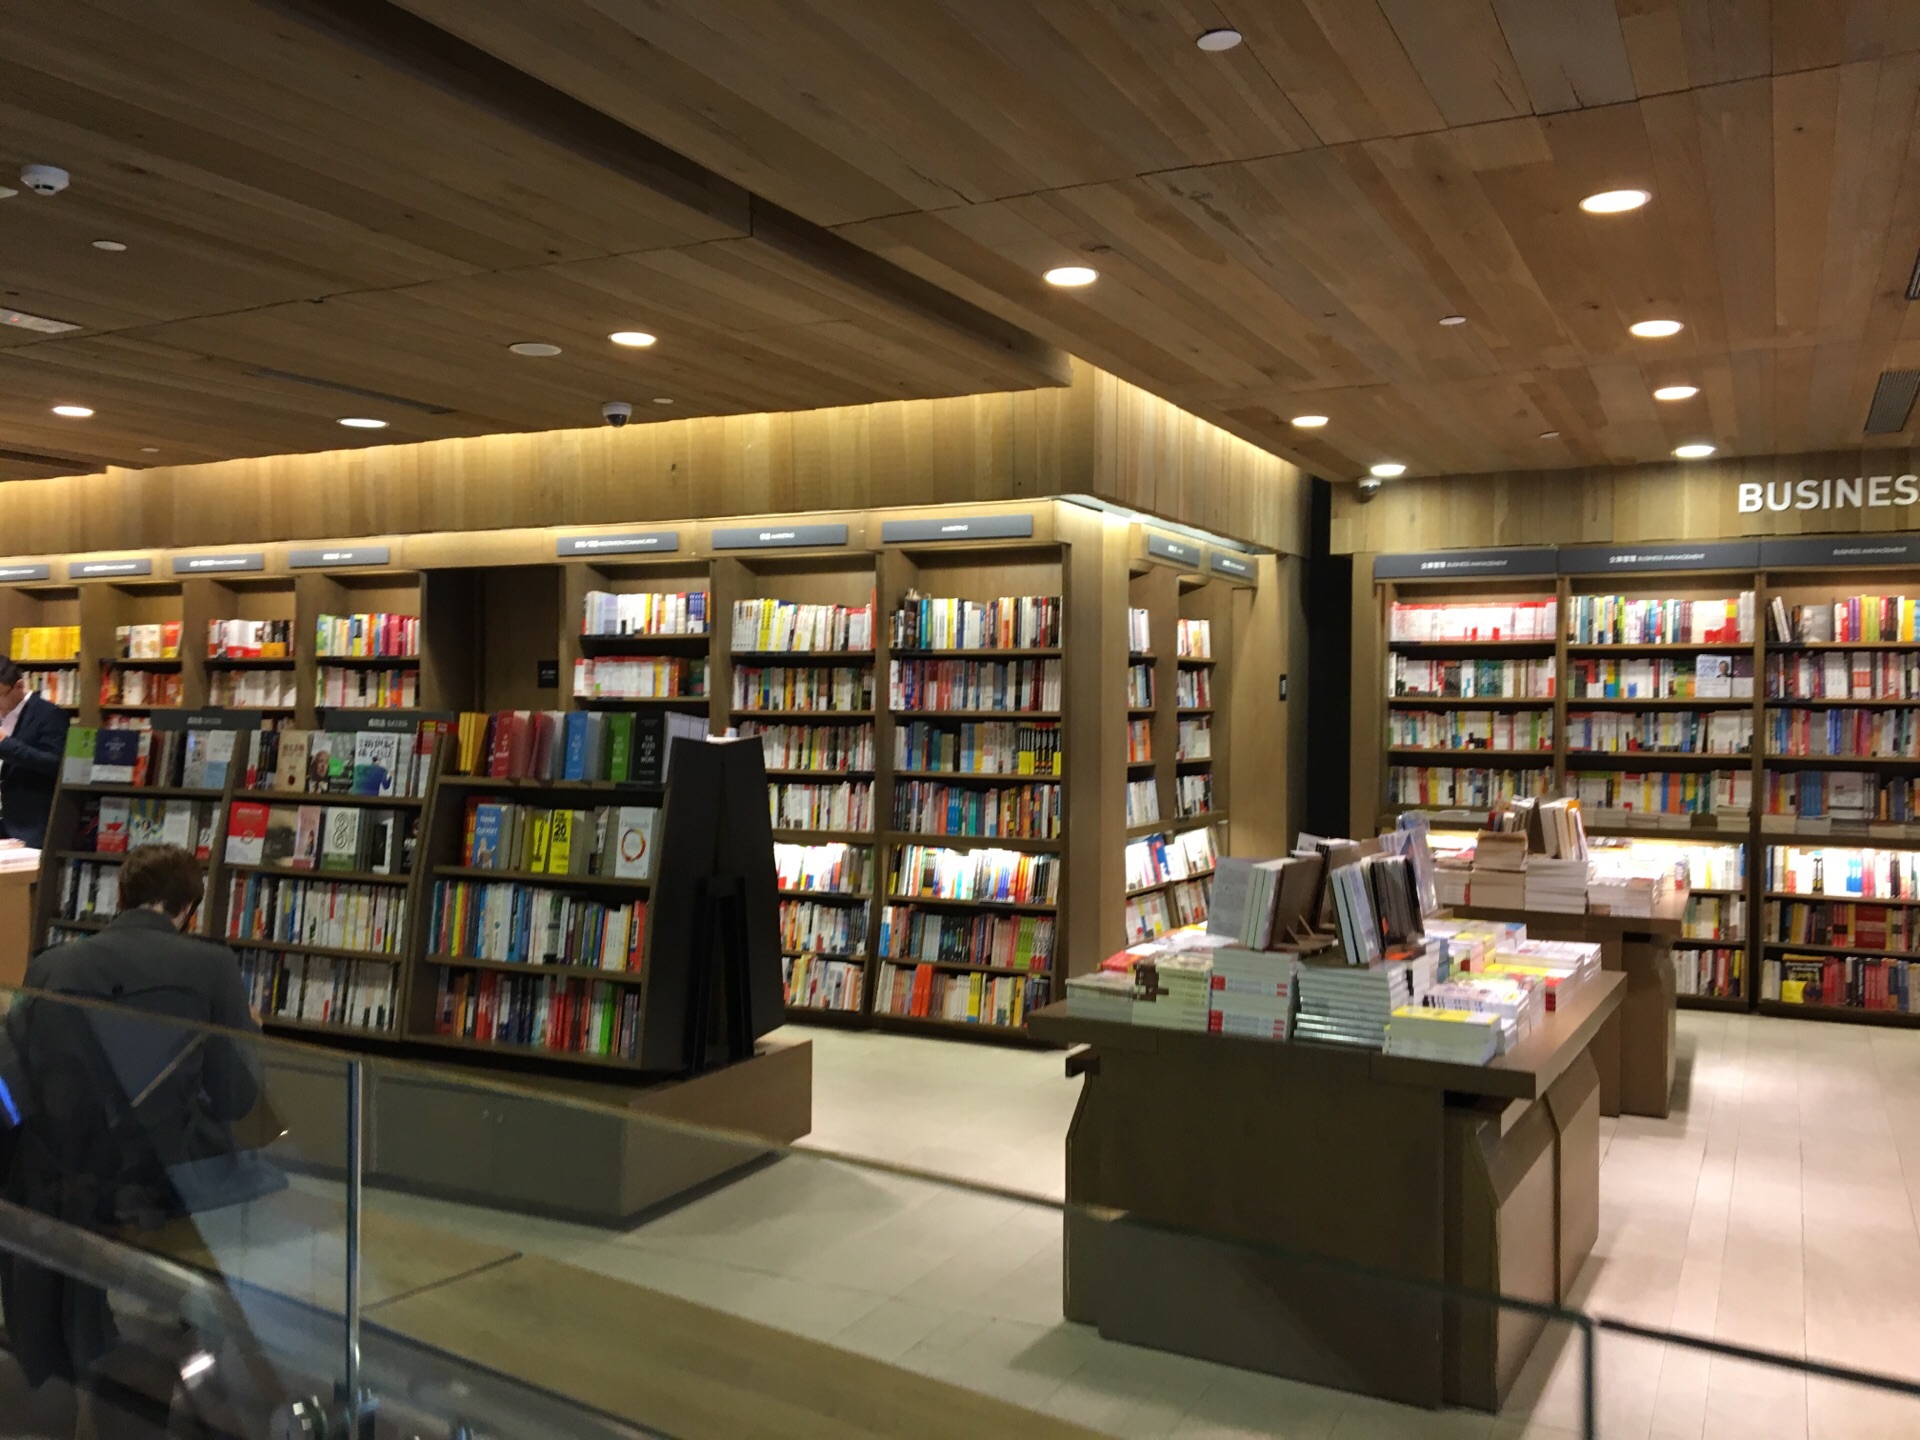 【携程攻略】香港诚品书店景点,还不错。台湾的书店。位置很好找。去的人挺多 不过大家都挺安静的。…